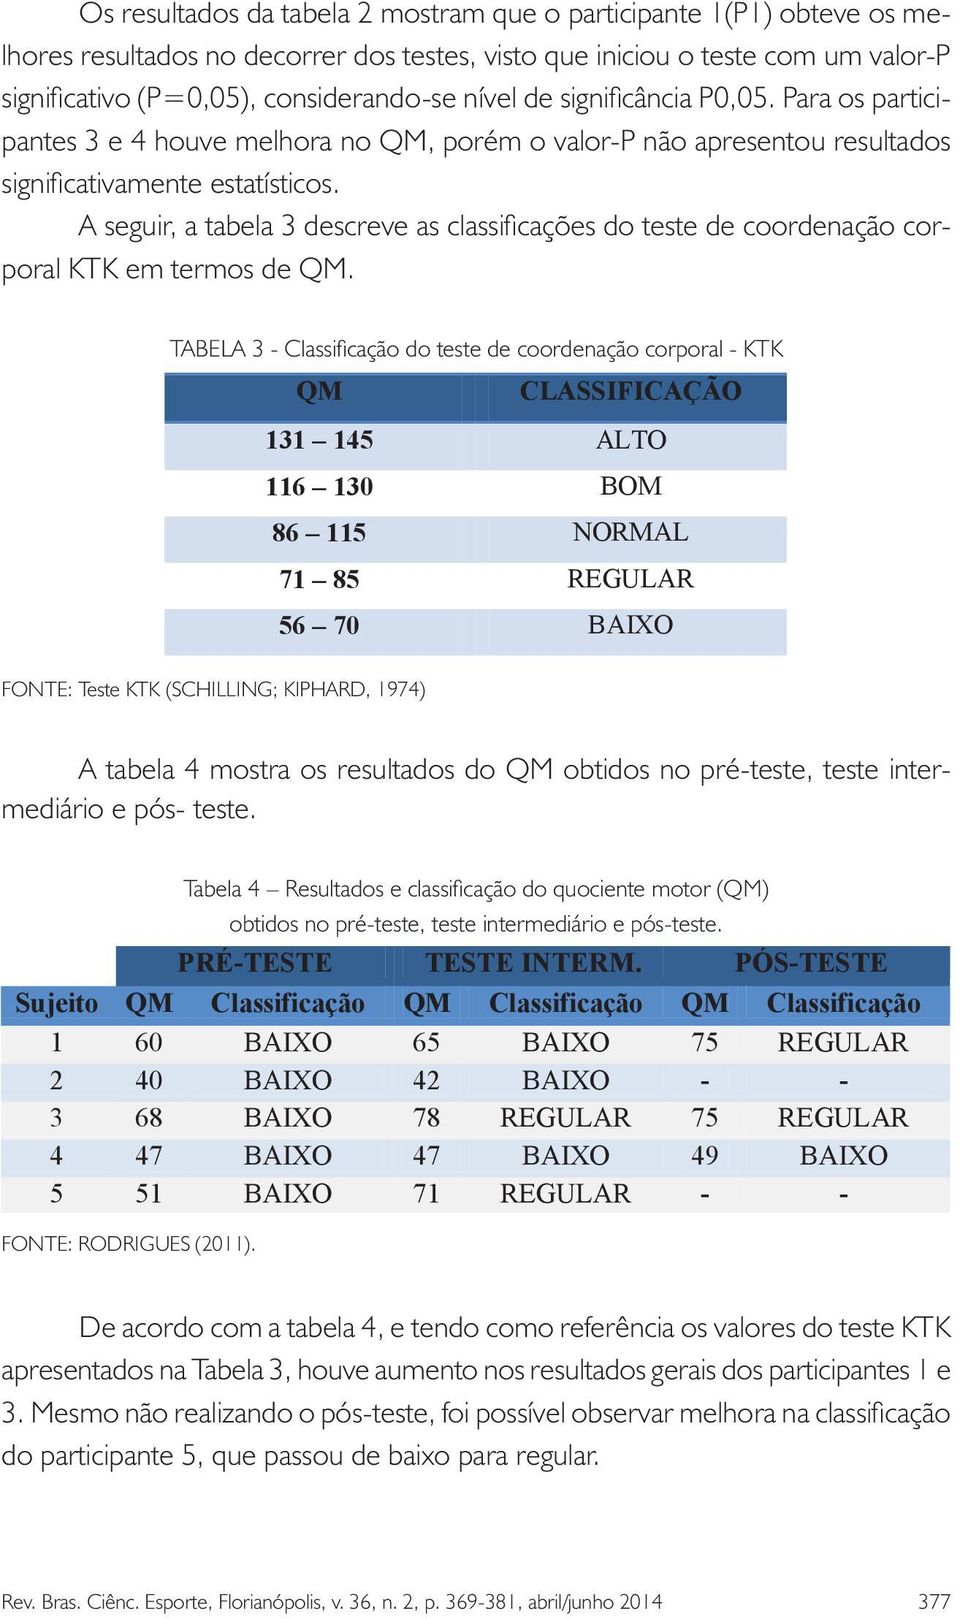 A seguir, a tabela 3 descreve as classificações do teste de coordenação corporal KTK em termos QM de QM.